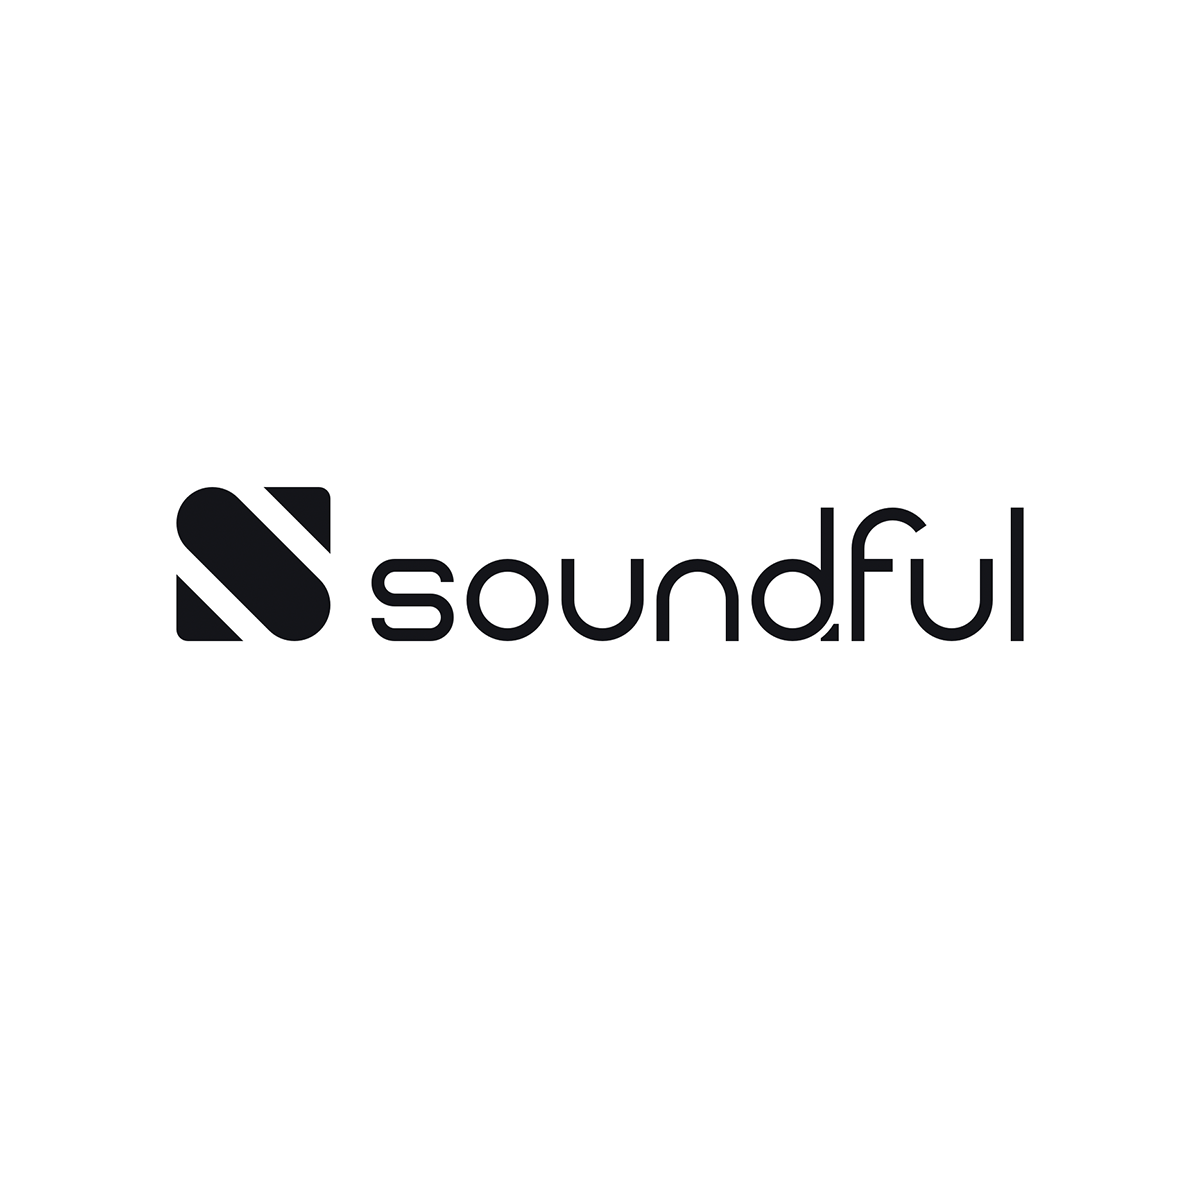 La agencia smartboost de United States ayudó a Soundful a hacer crecer su empresa con SEO y marketing digital